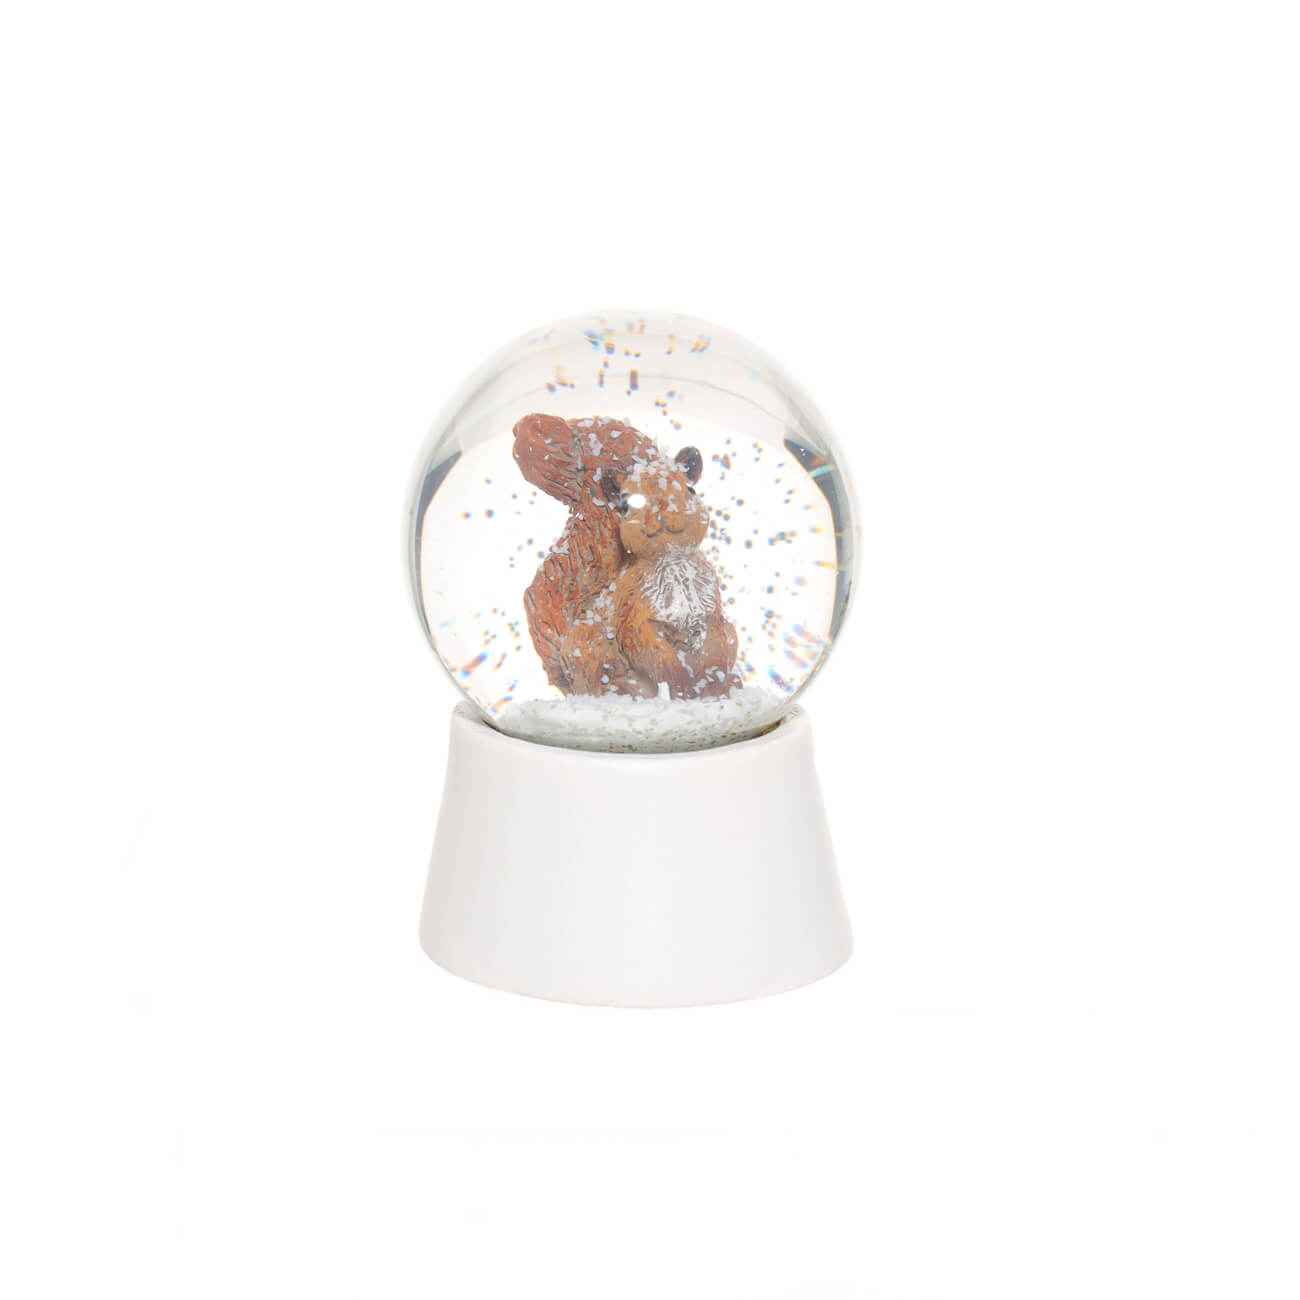 Снежный шар, 7 см, полирезин/стекло, Белка, Forest animals - фото 1